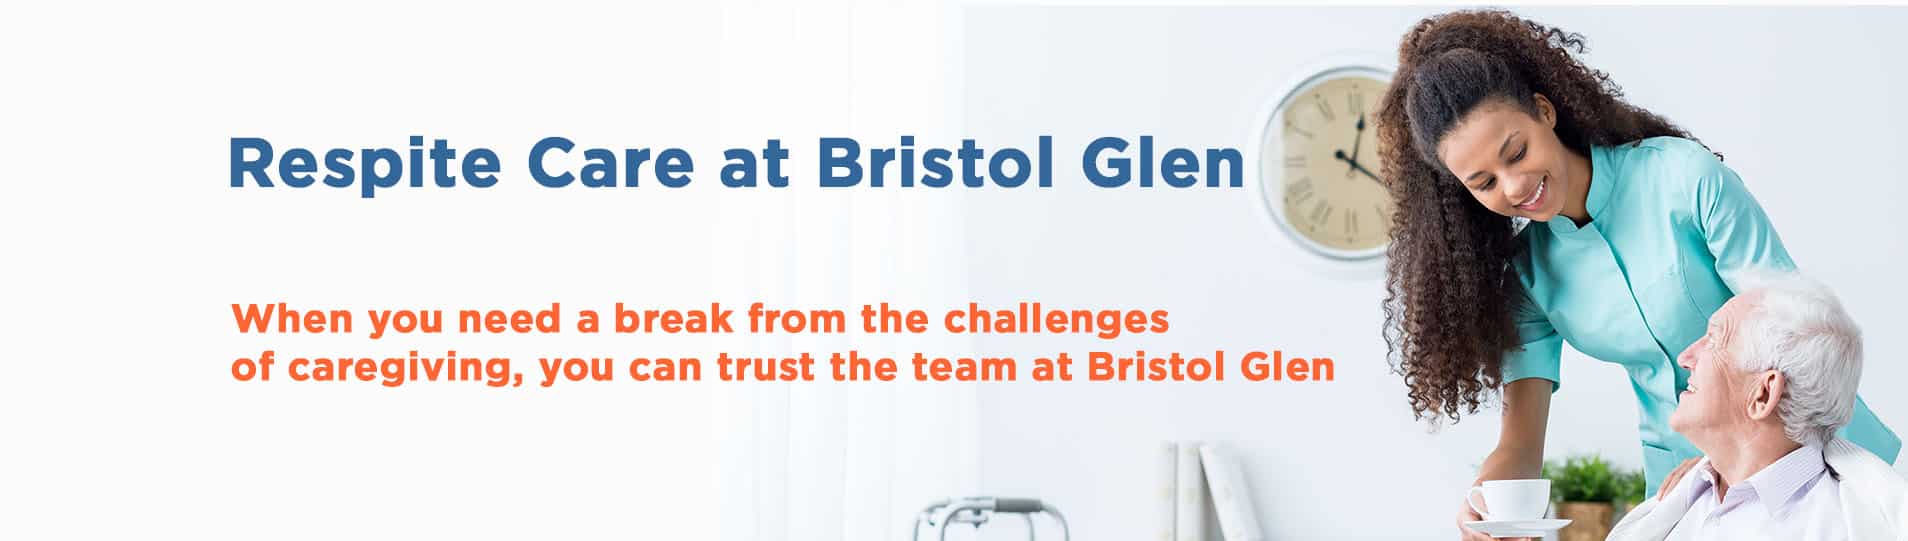 Respite Care Services at Bristol Glen